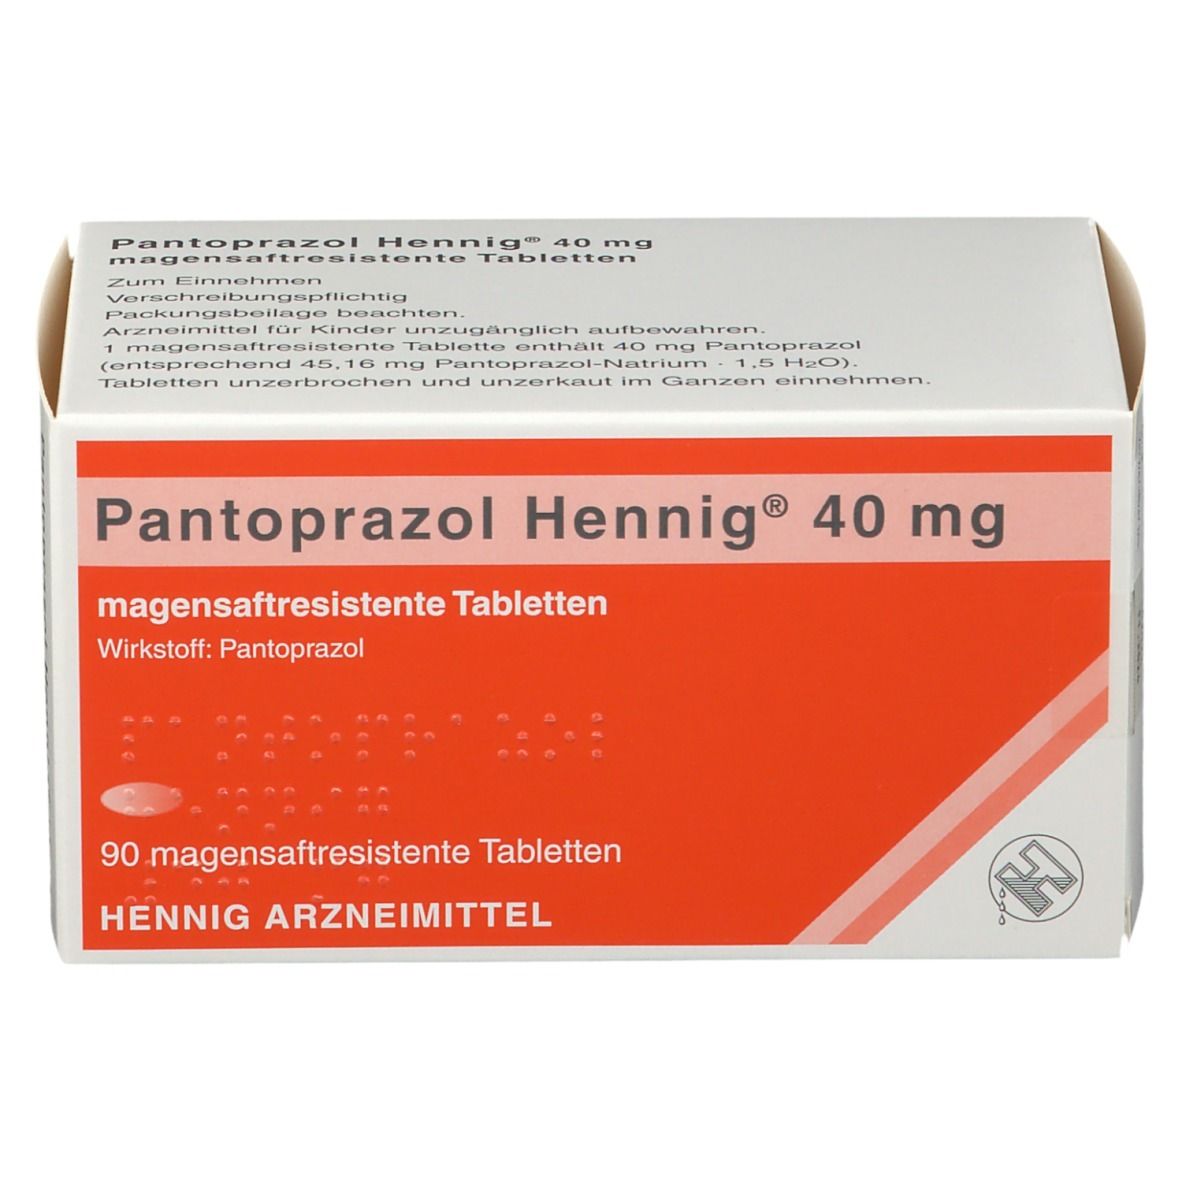 Pantoprazol Hennig® 40 mg